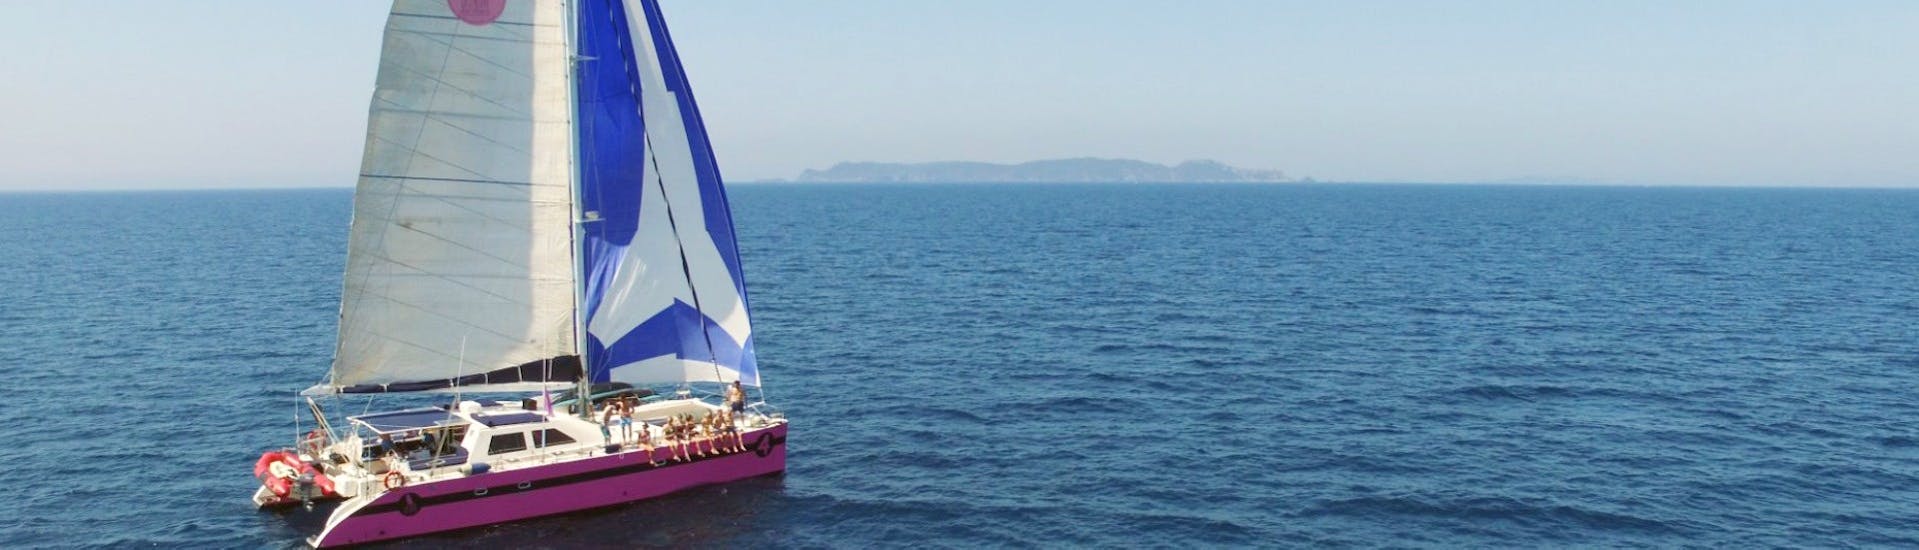 Vista durante la gita in catamarano alle spiagge di Salins e alla baia di Canoubiers con il maxi catamarano Caseneuve.